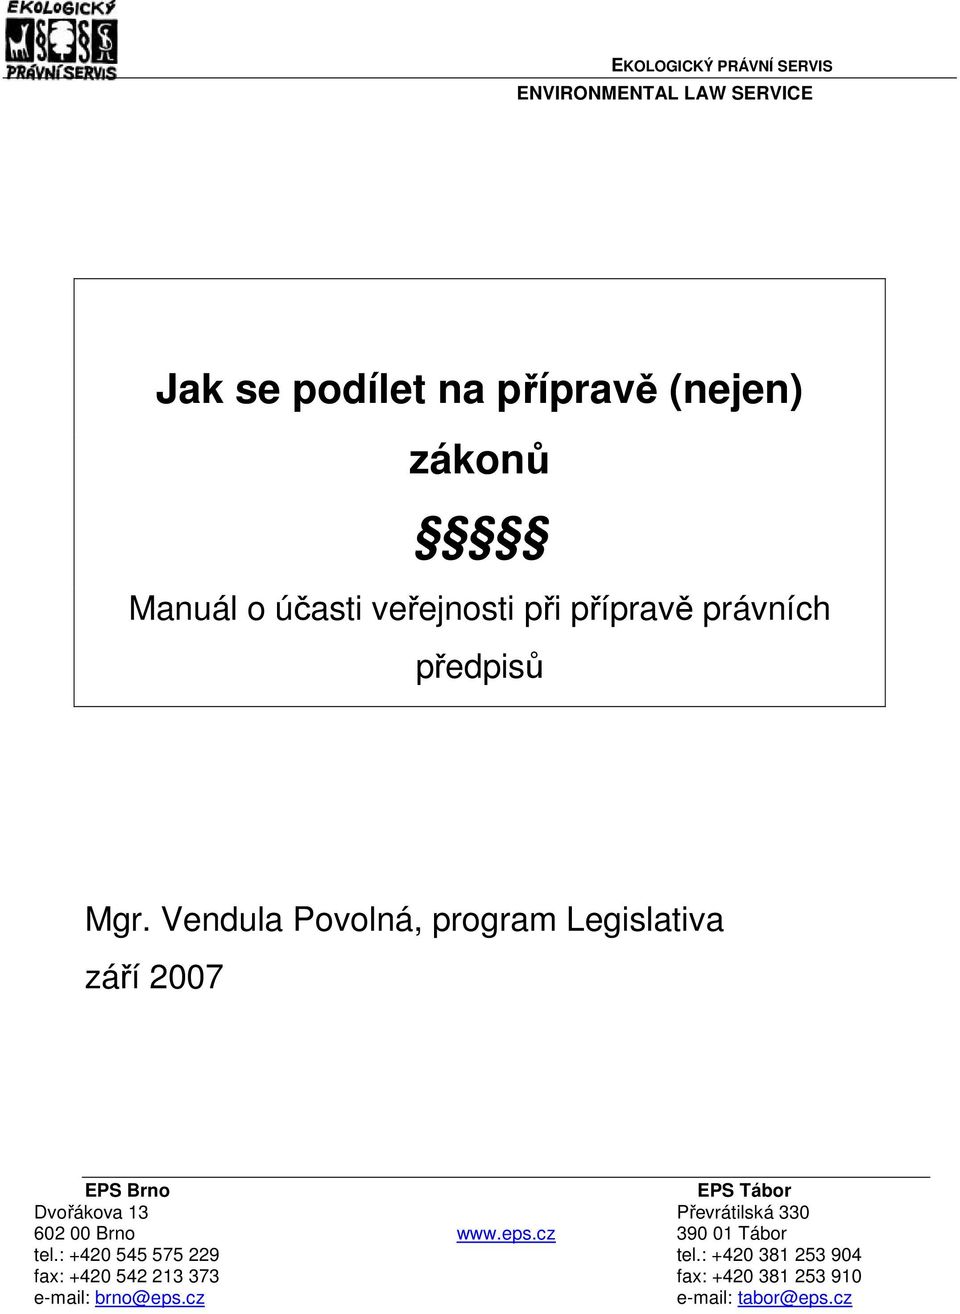 Vendula Povolná, program Legislativa září 2007 EPS Brno EPS Tábor Dvořákova 13 Převrátilská 330 602 00